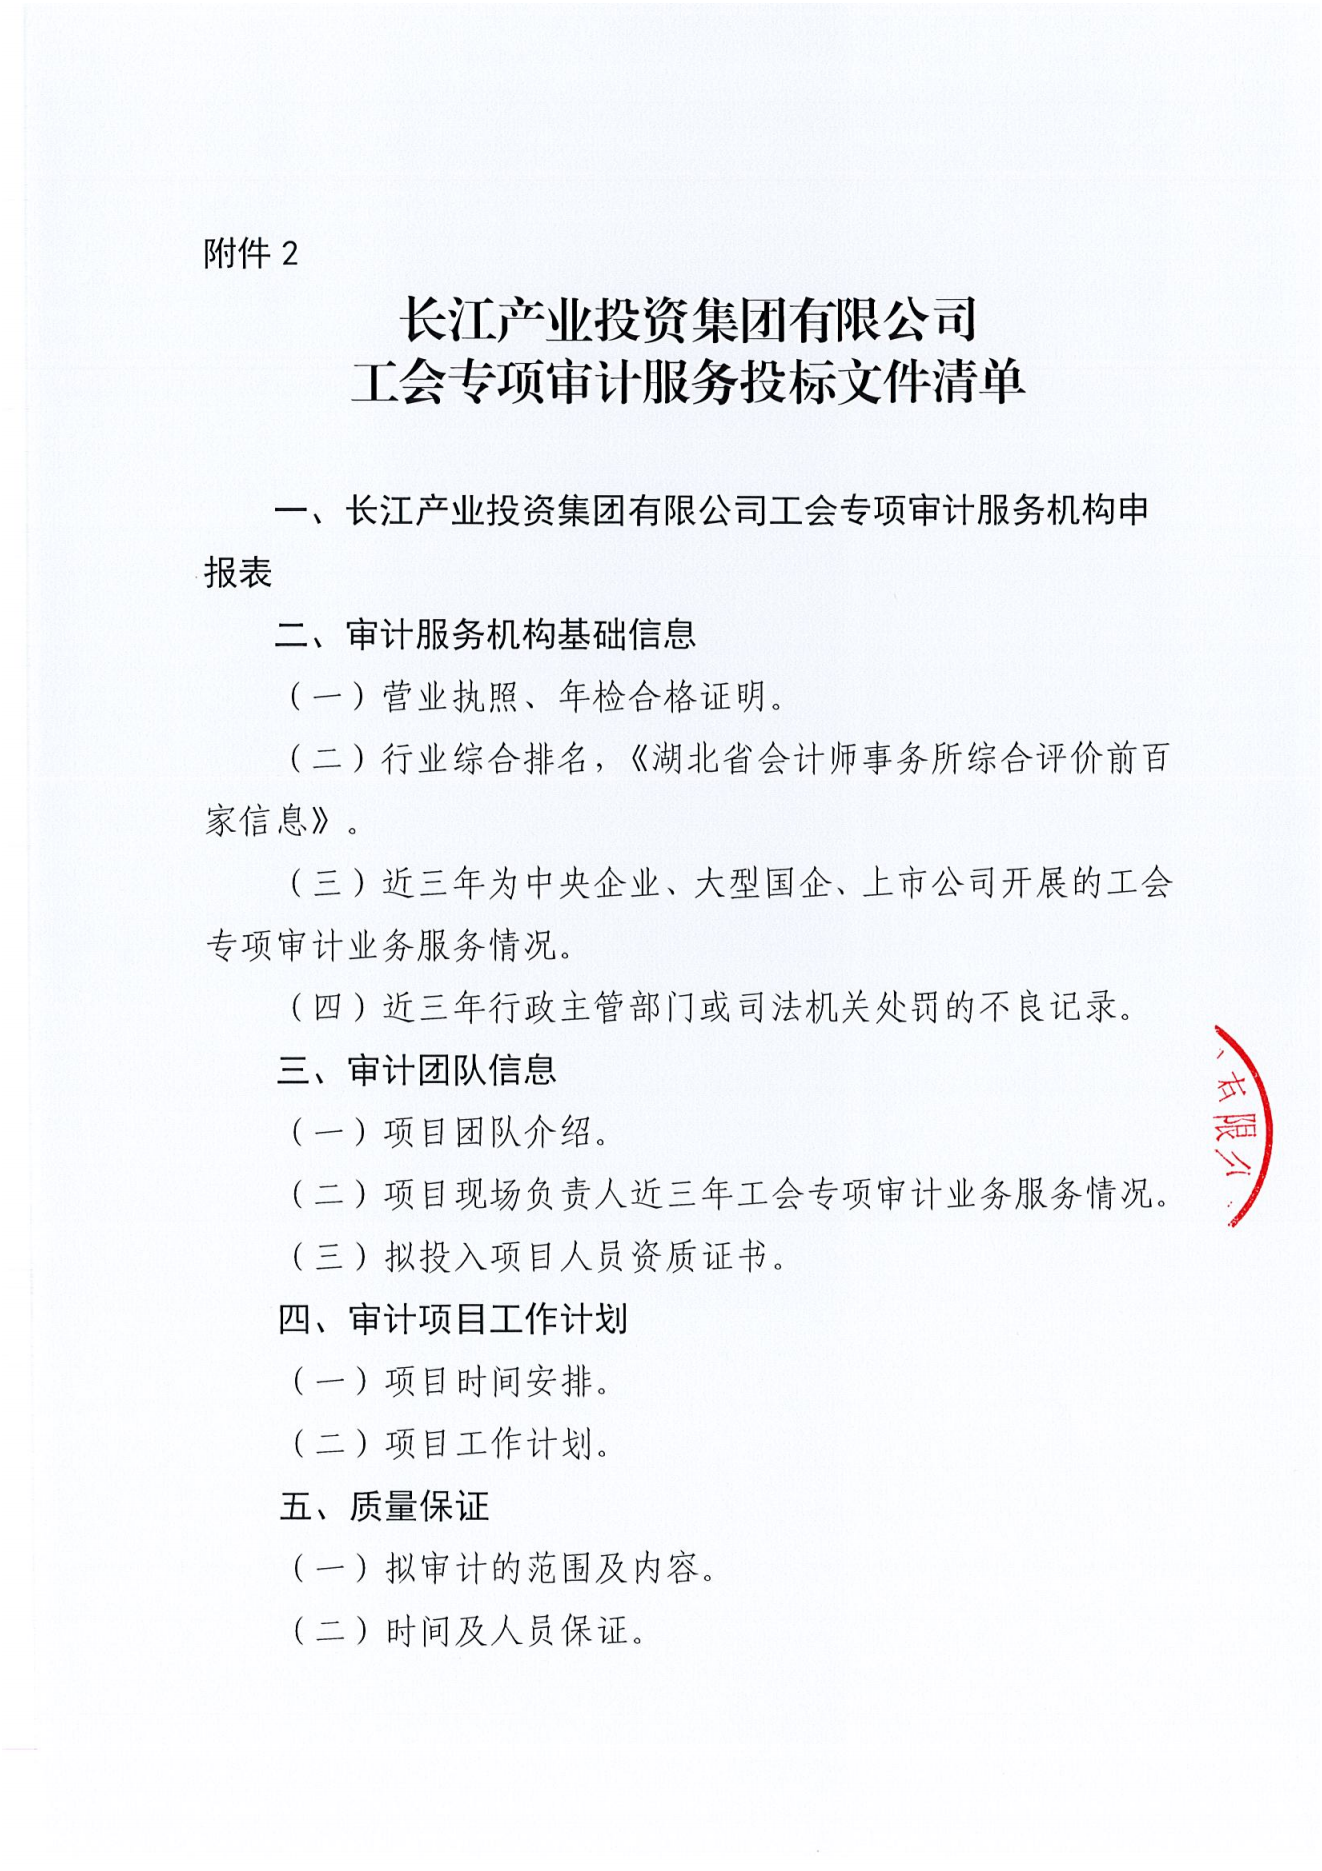 亚娱体育·(中国)官方网站工会专项审计项目竞争性磋商公告_04.png